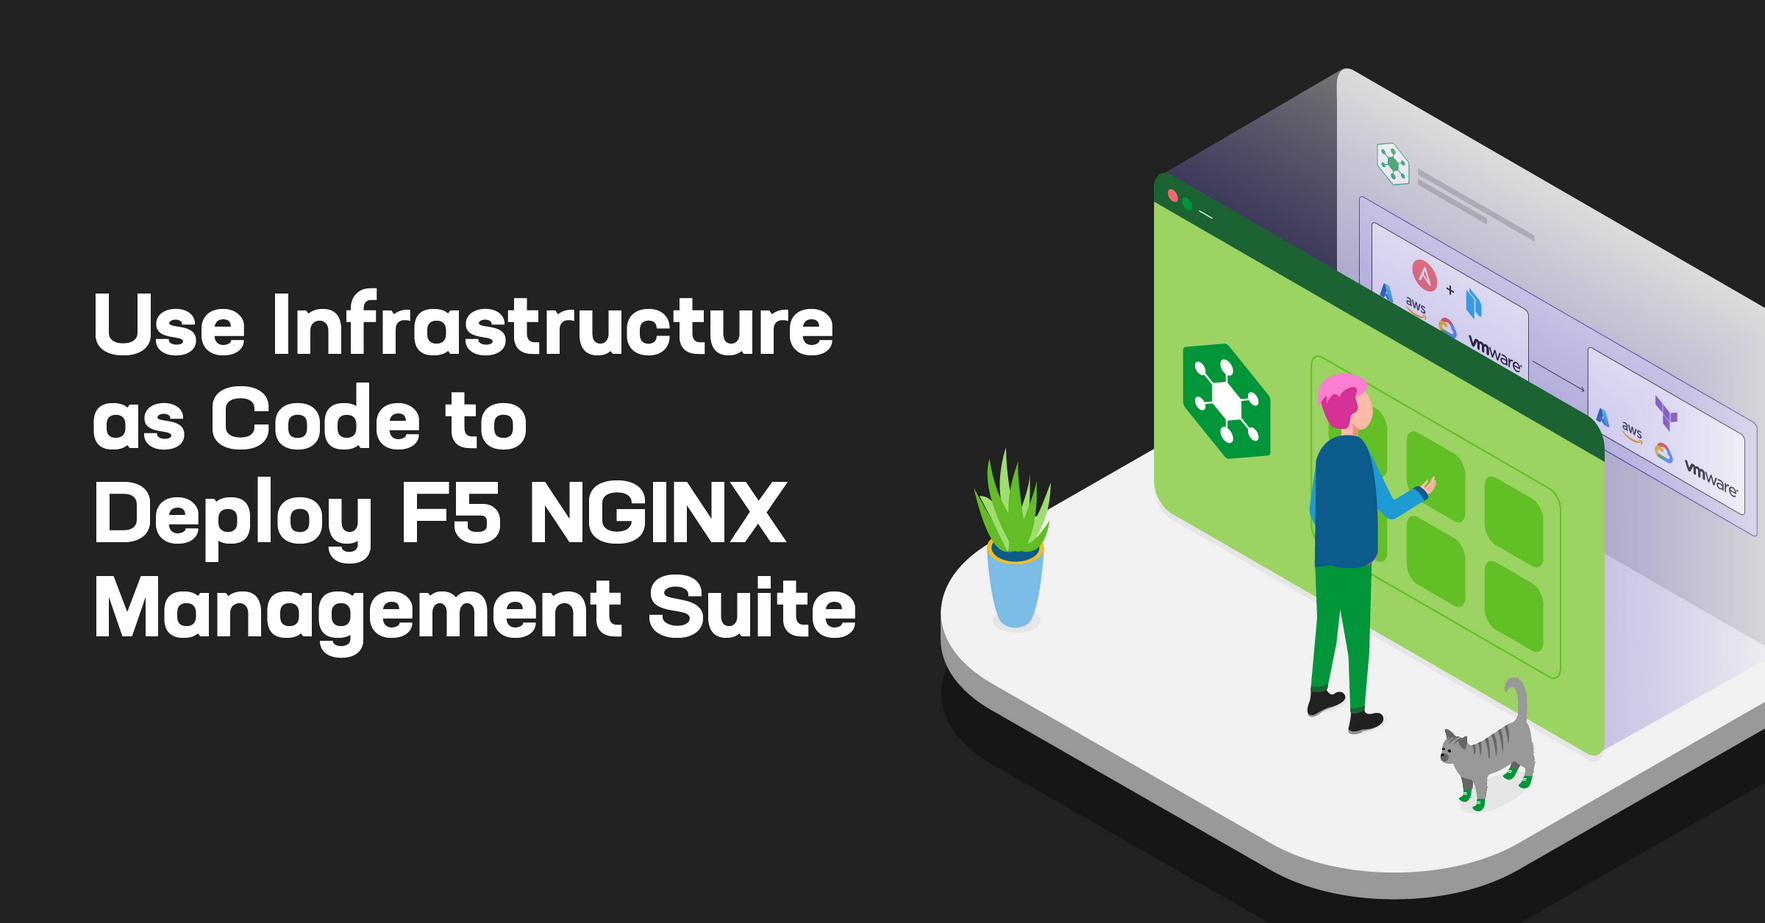 F5 Unveils NGINX Management Suite